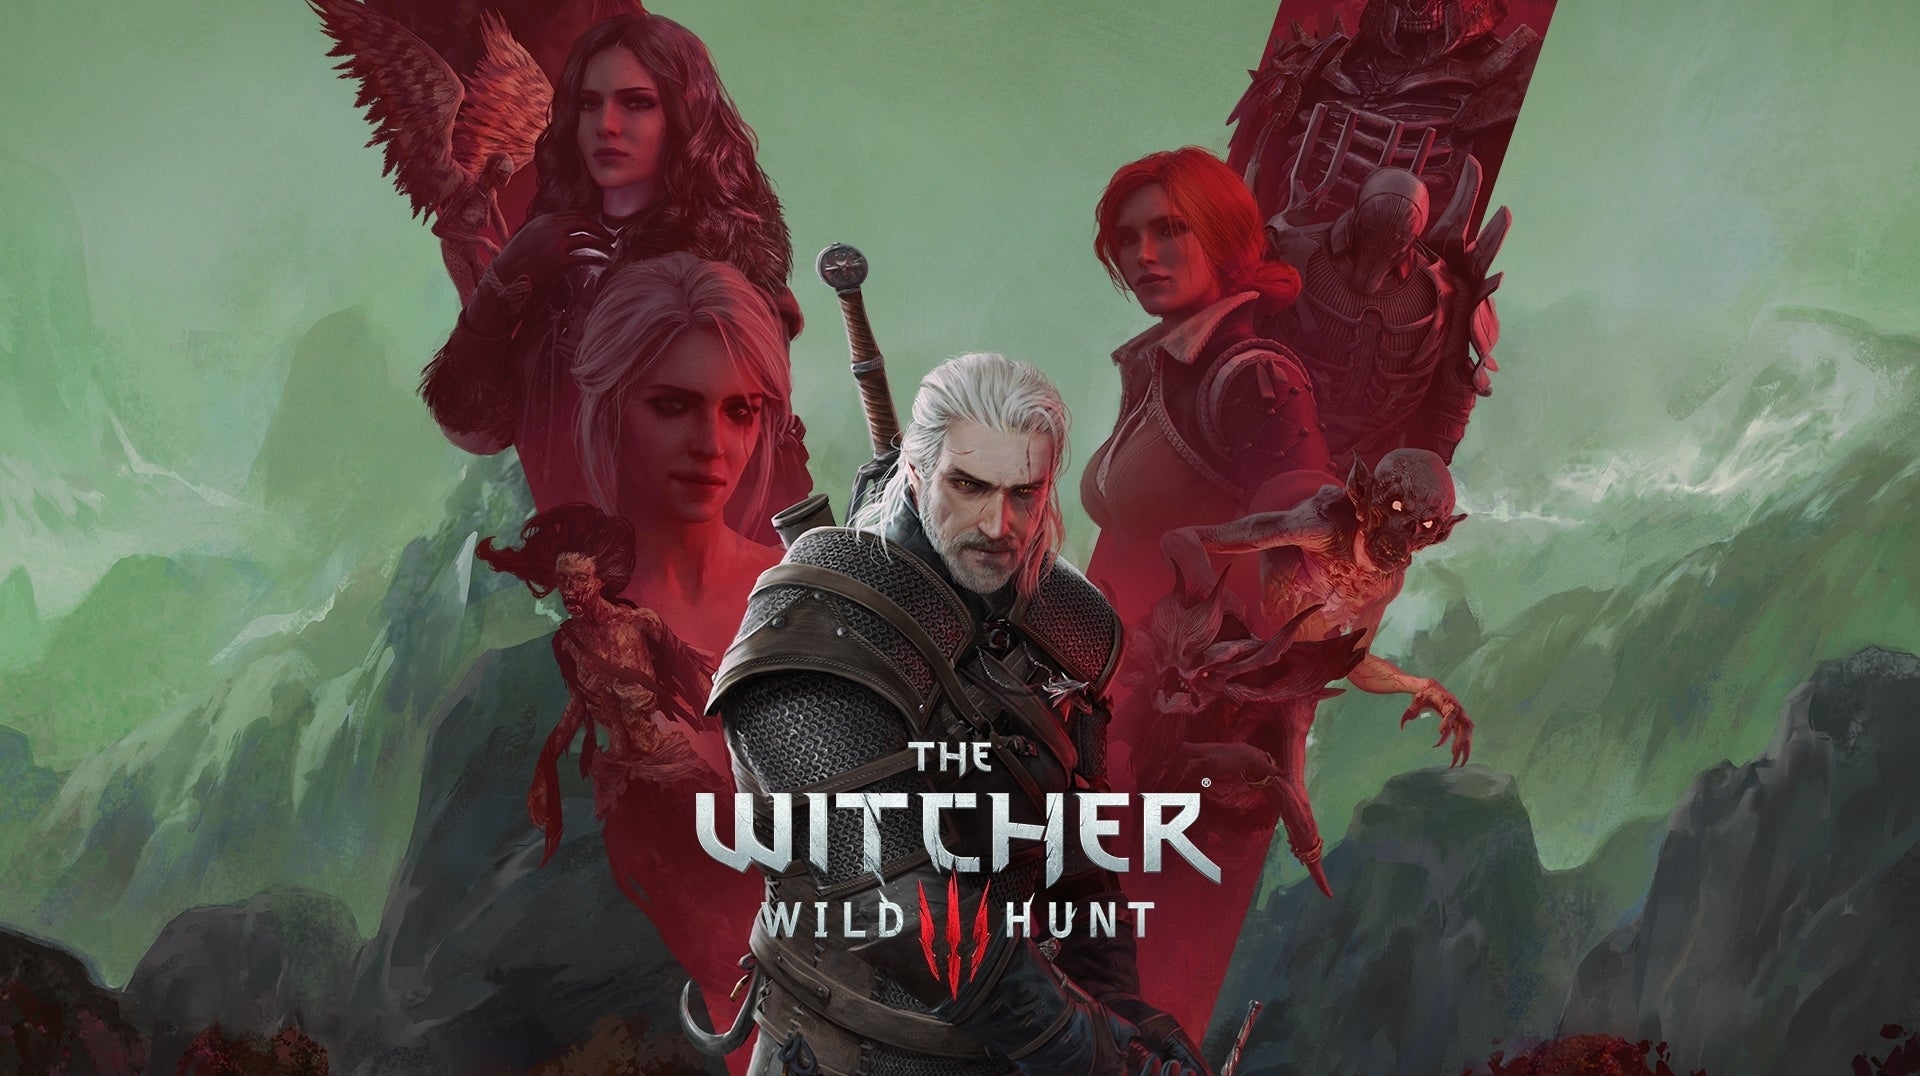 Imagen para CD Projekt celebra el quinto aniversario de The Witcher 3 con descuentos en PC, PS4 y Xbox One